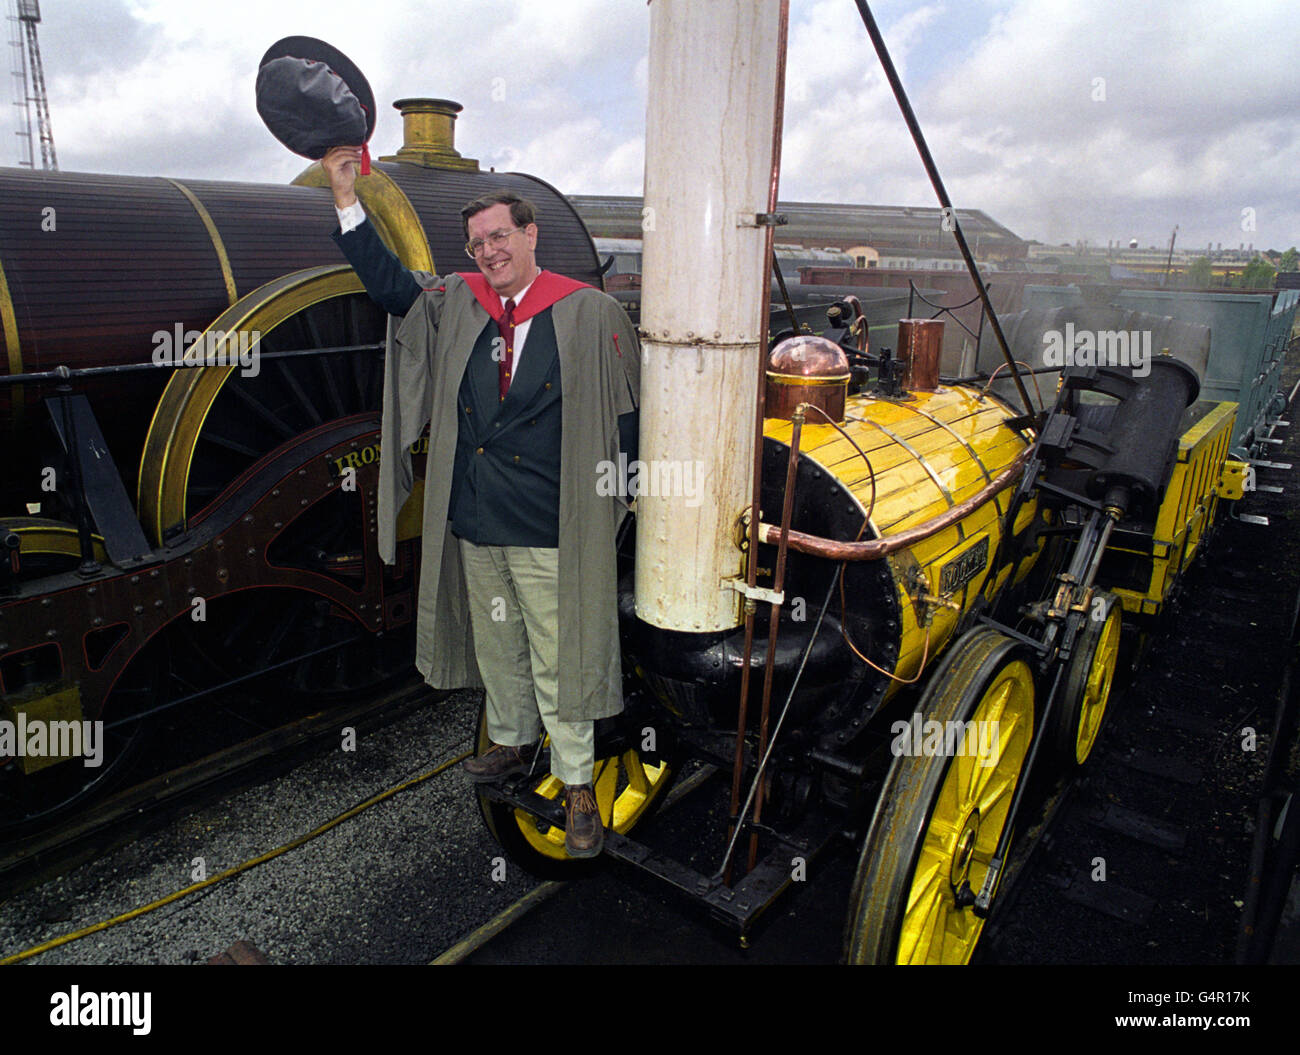 Michael Bailey auf einer Nachbildung von Stephenson's Rocket Locomotive im National Railway Museum in York. Der erste Doktor der Welt in Eisenbahnstudien wurde an den frühen Lokomotivberater Michael Bailey verliehen. Stockfoto